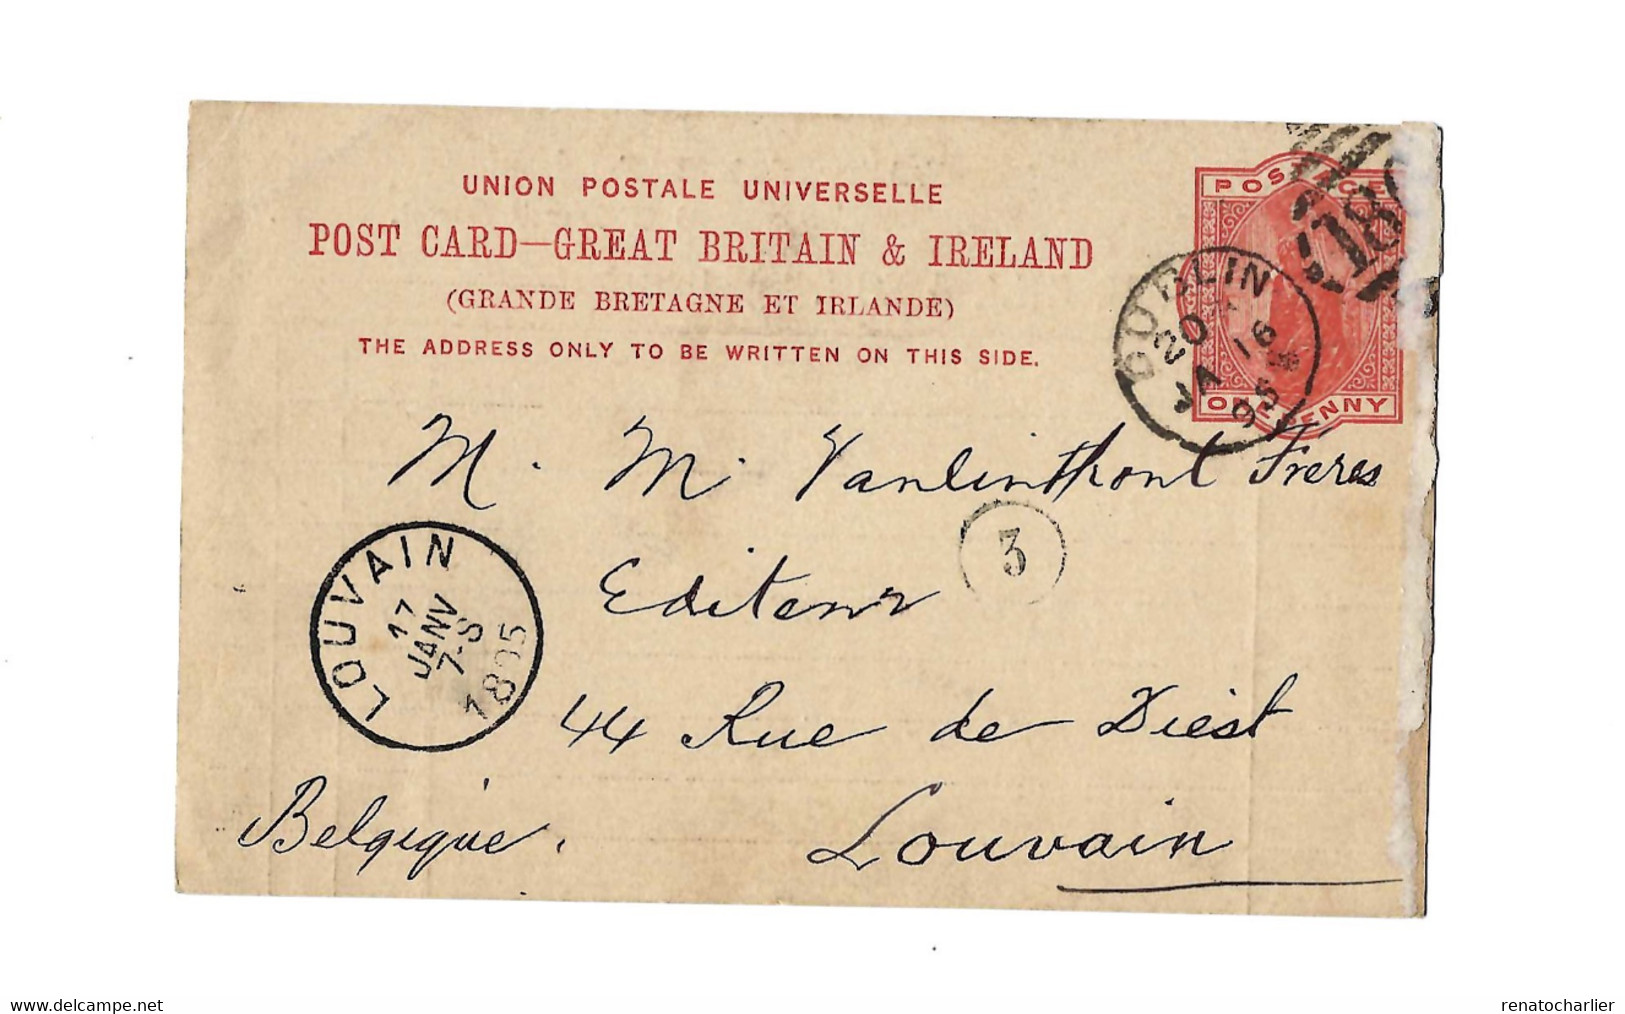 Entier Postal à 1 Penny.Expédié De Dublin à Louvain (Belgique) - Interi Postali